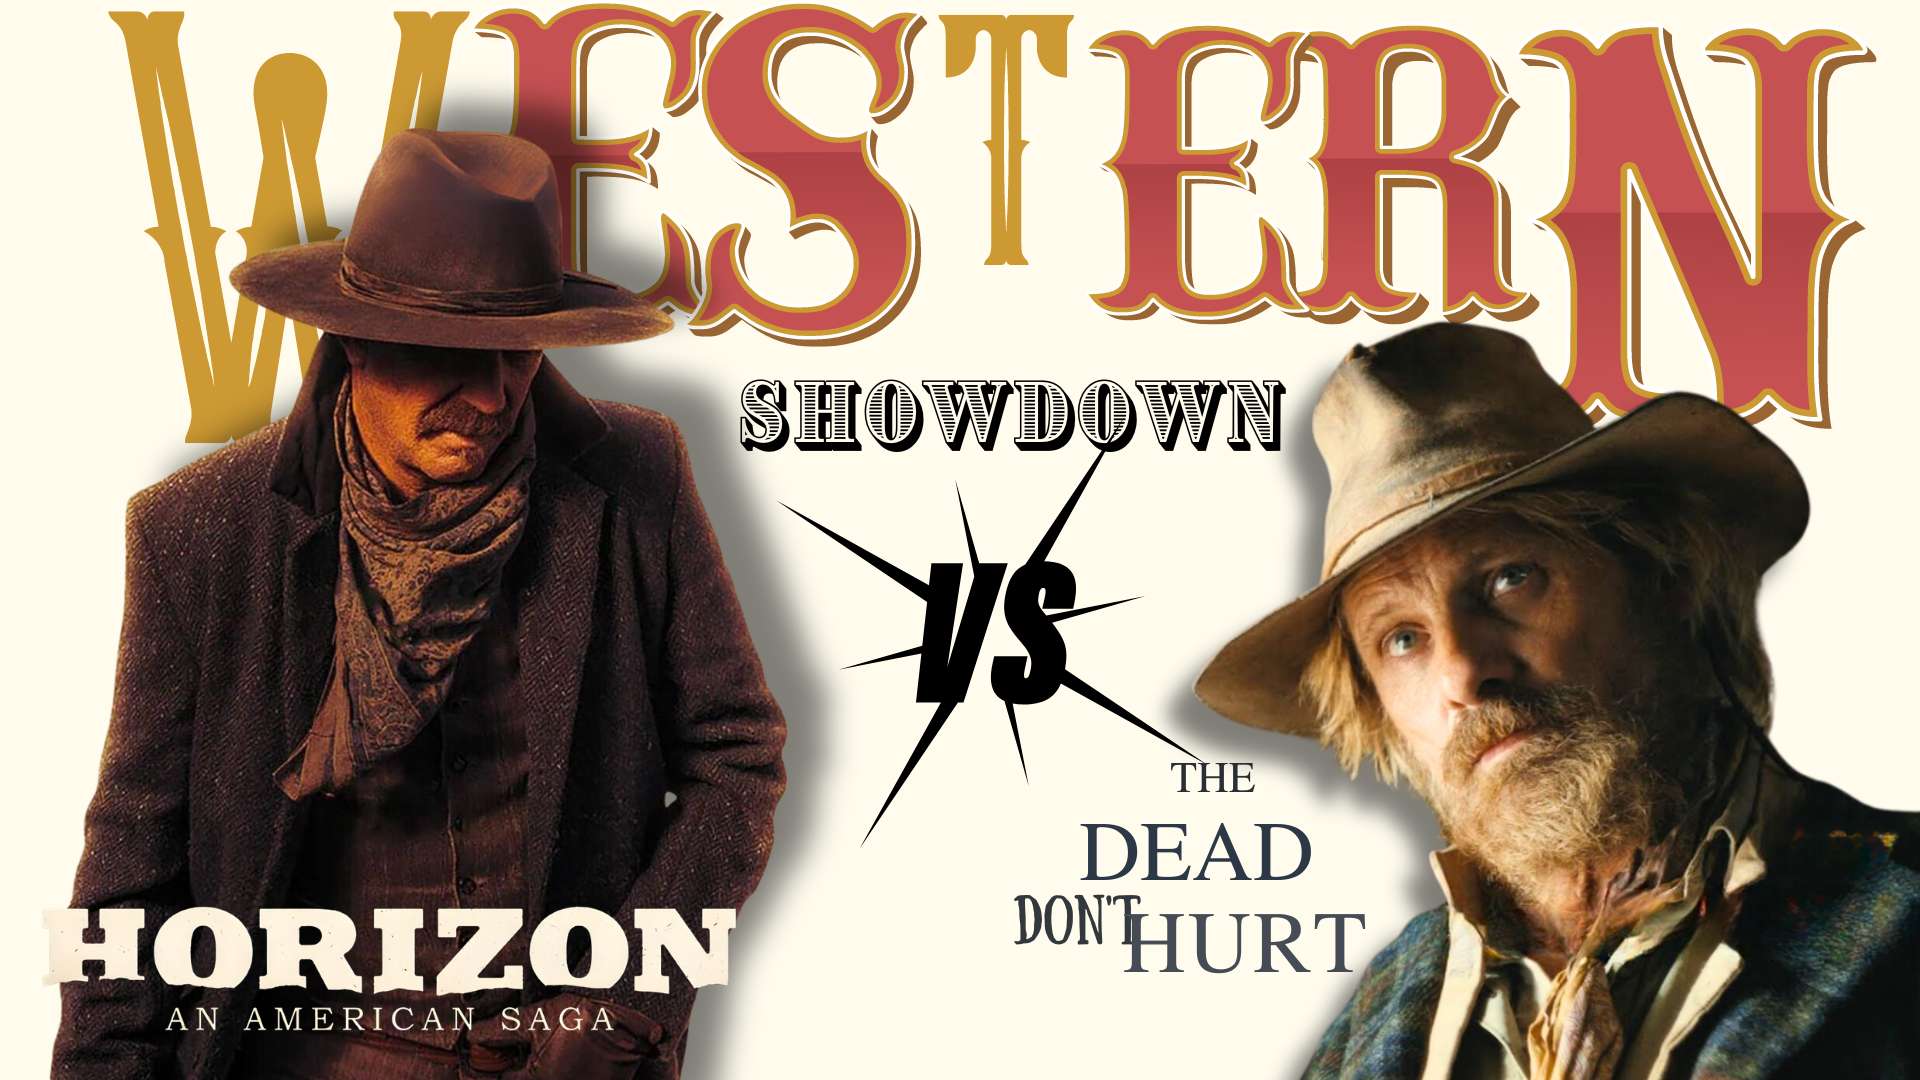 The Battle of the Cowboys: Costner vs. Mortensen